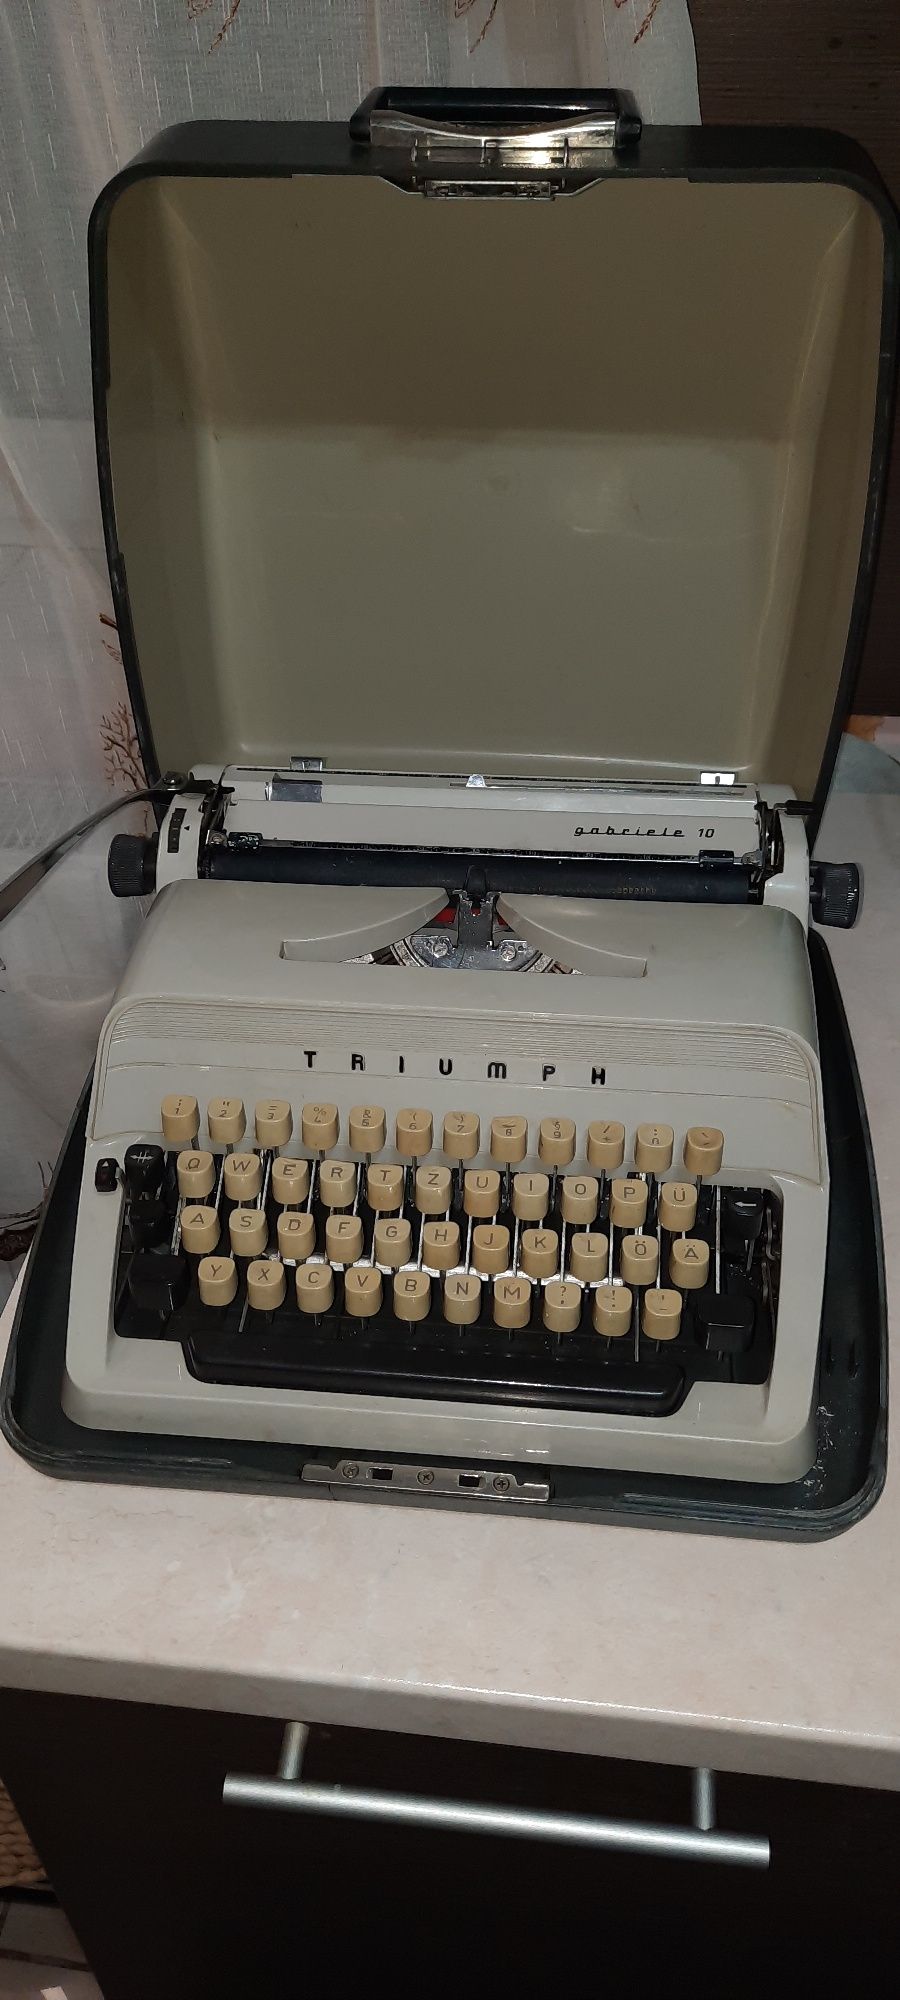 Mașină de scris Triumph Gabrielle 10